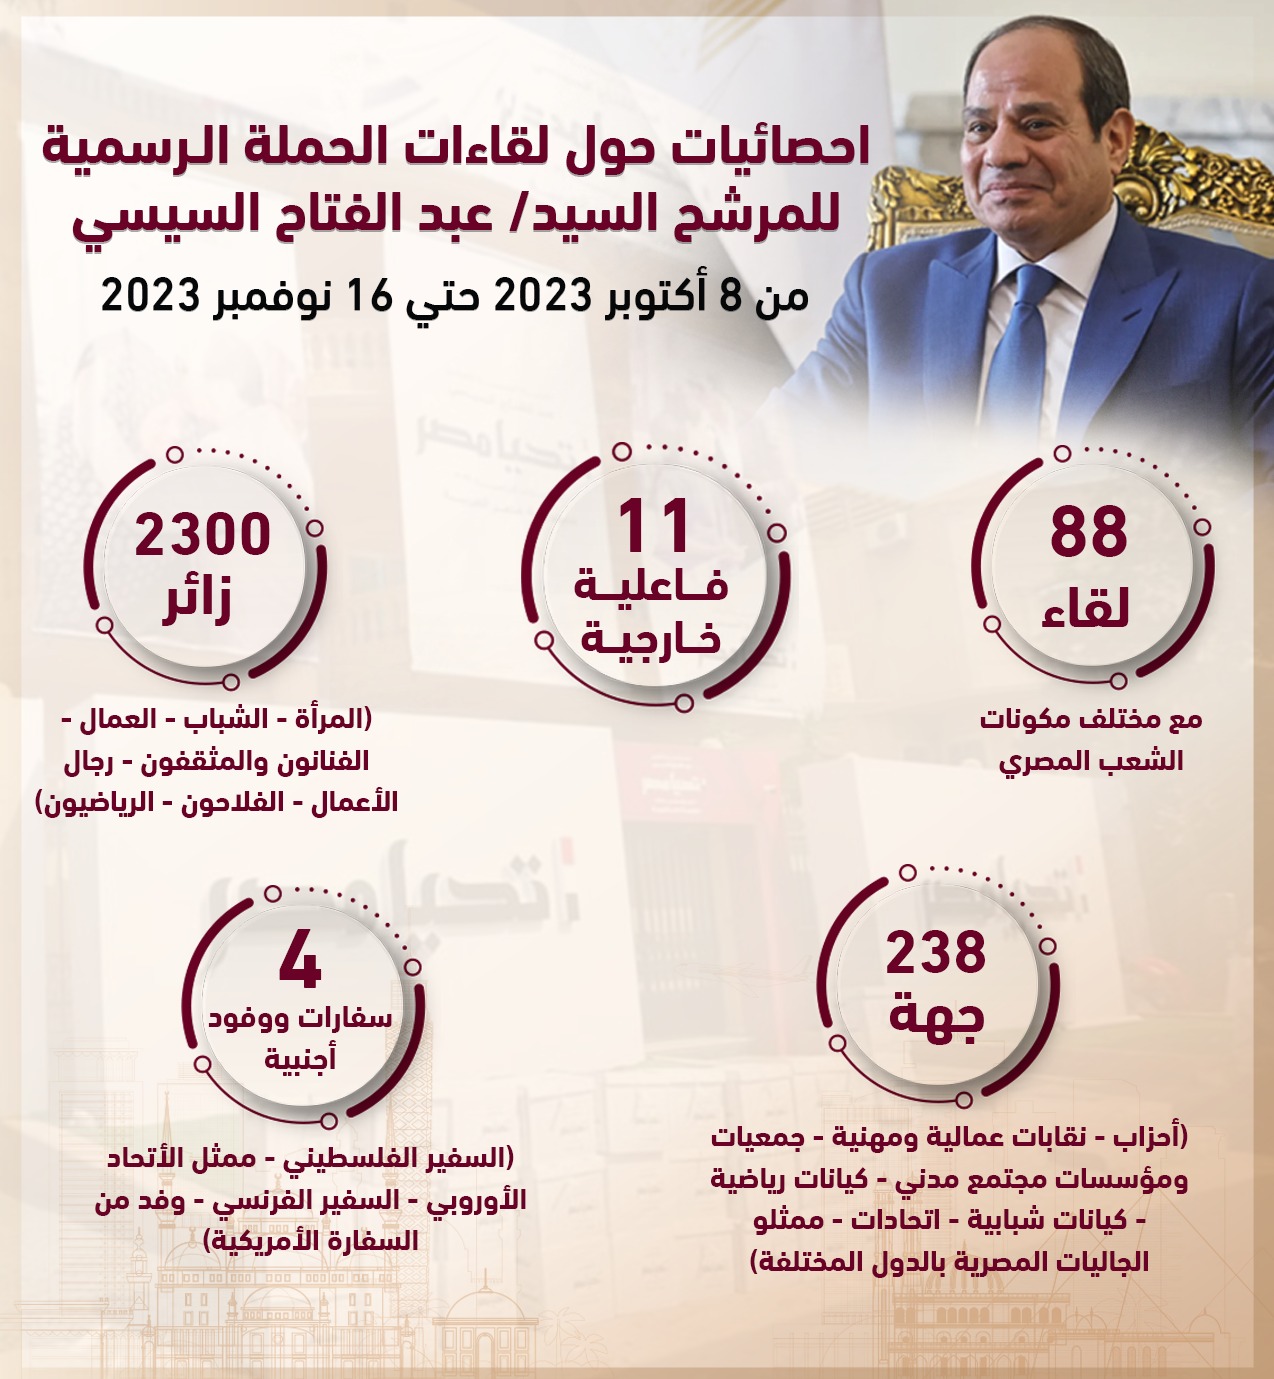 نشاط الحملة الرسمية للمرشح الرئاسى عبد الفتاح السيسى